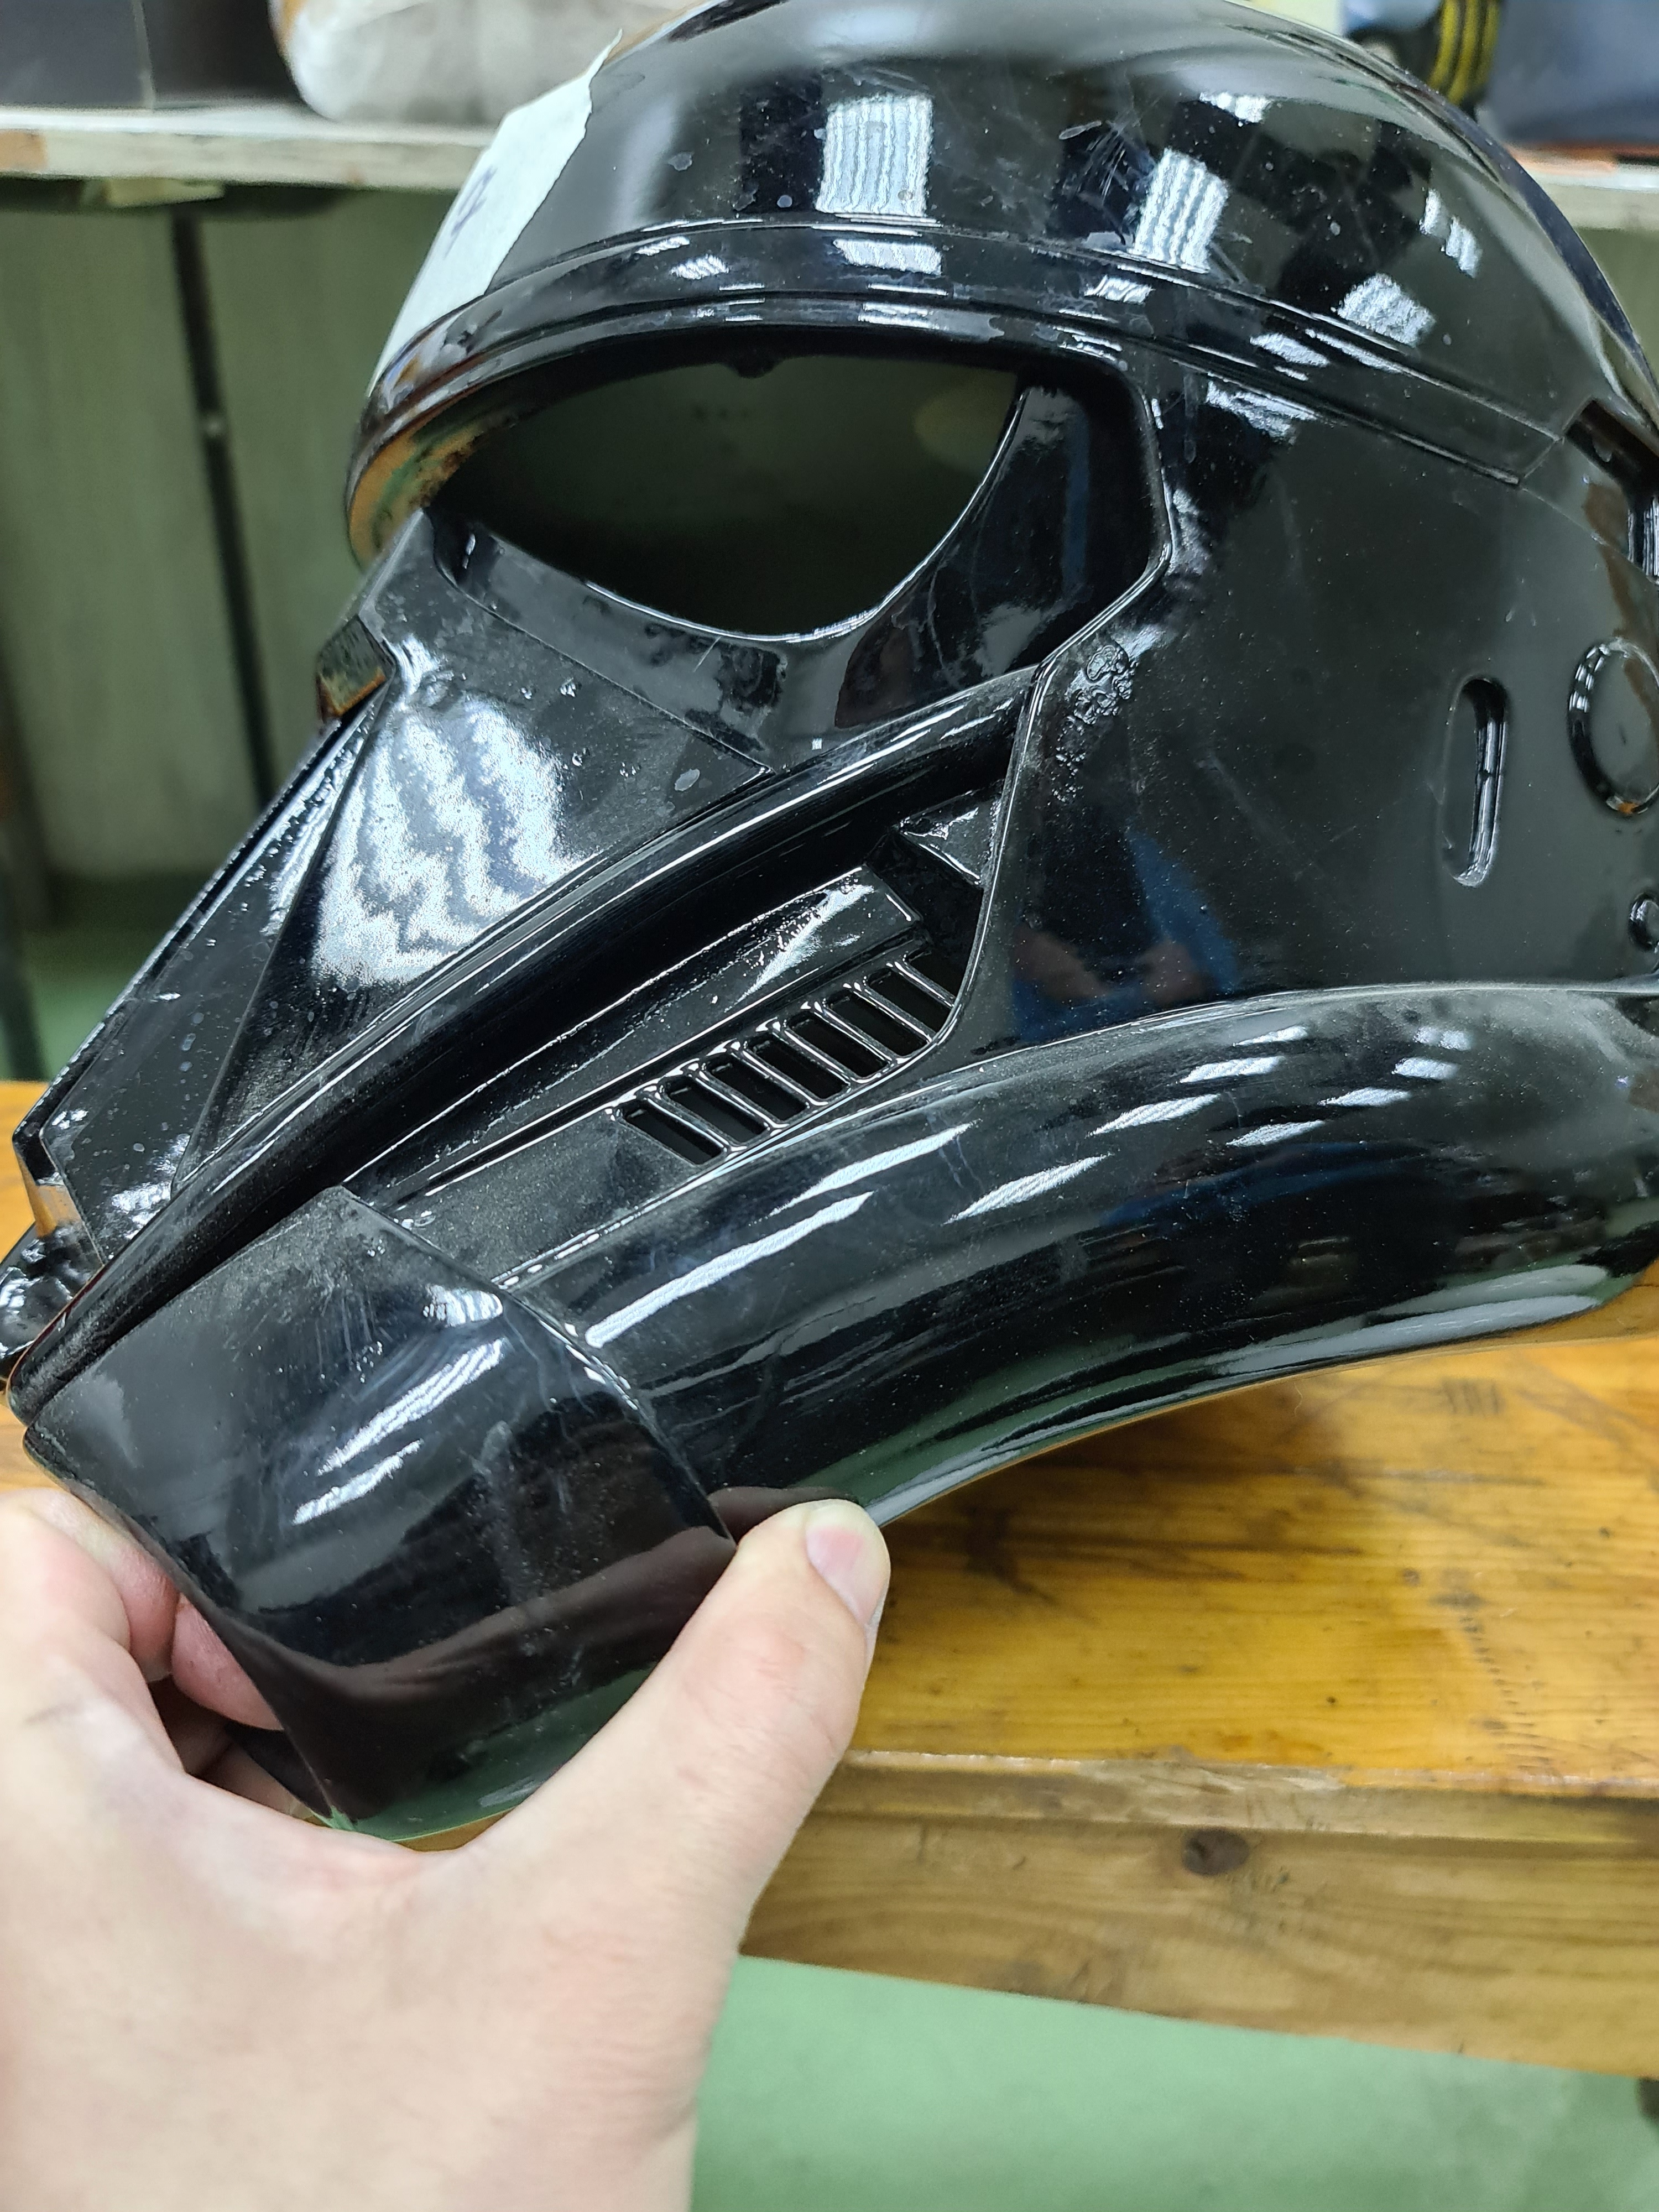 Grade "B" helmet - DeathTrooper #7